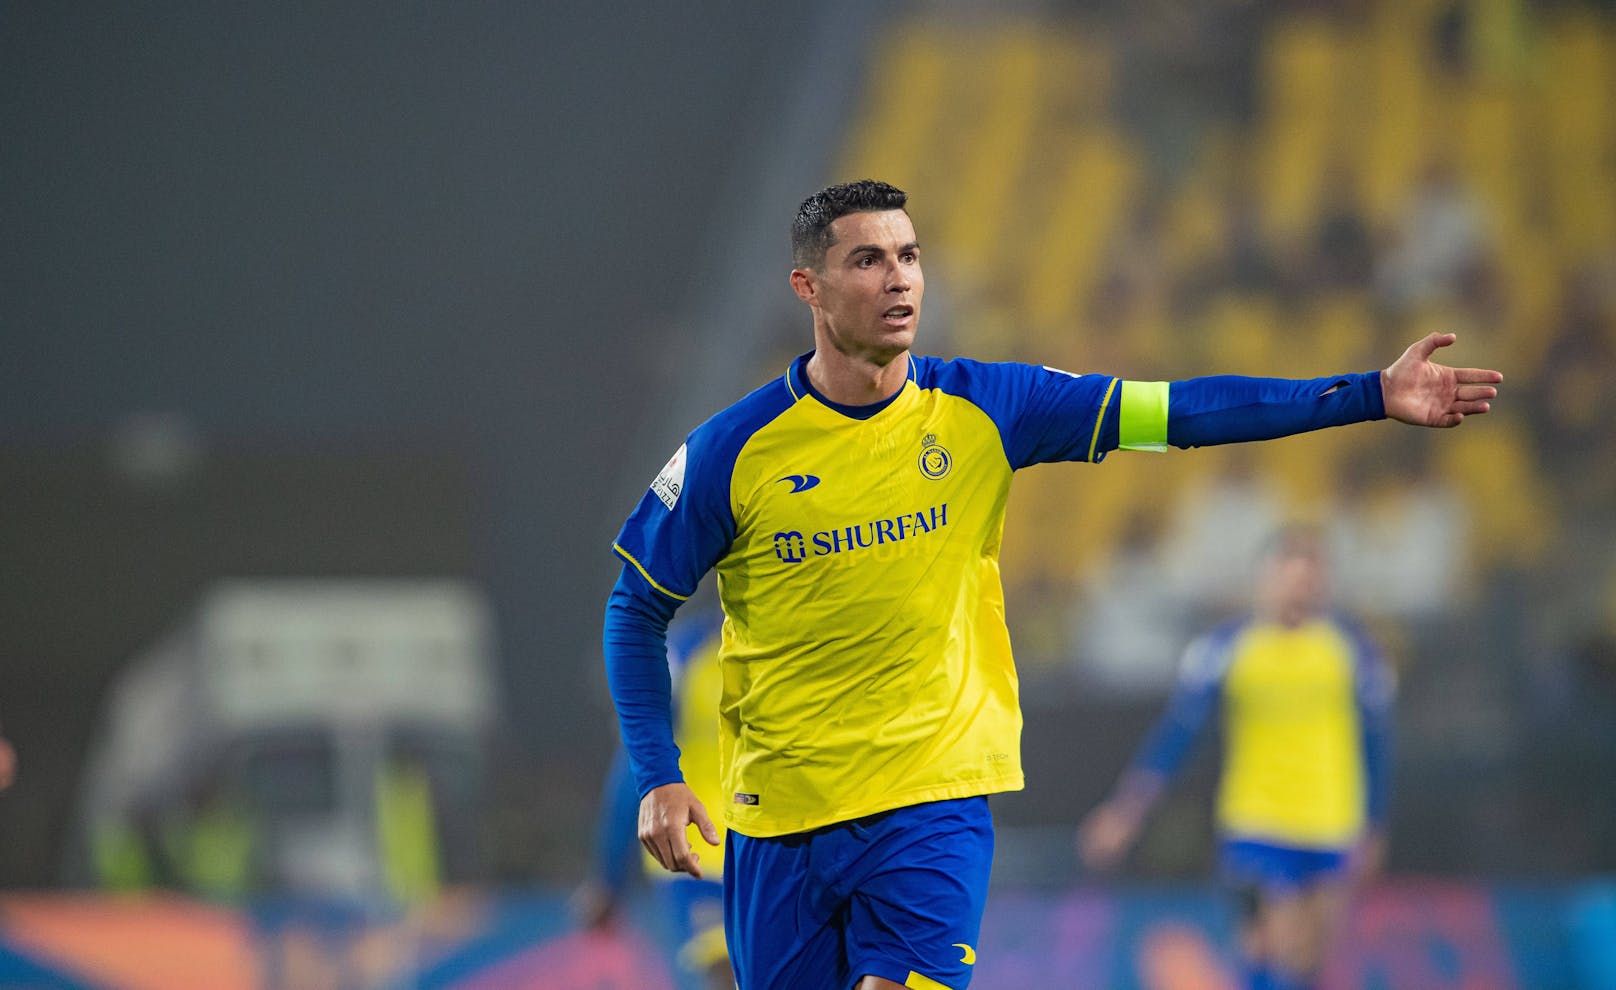 Insider enthüllt: Ronaldo wollte zu diesem Klub